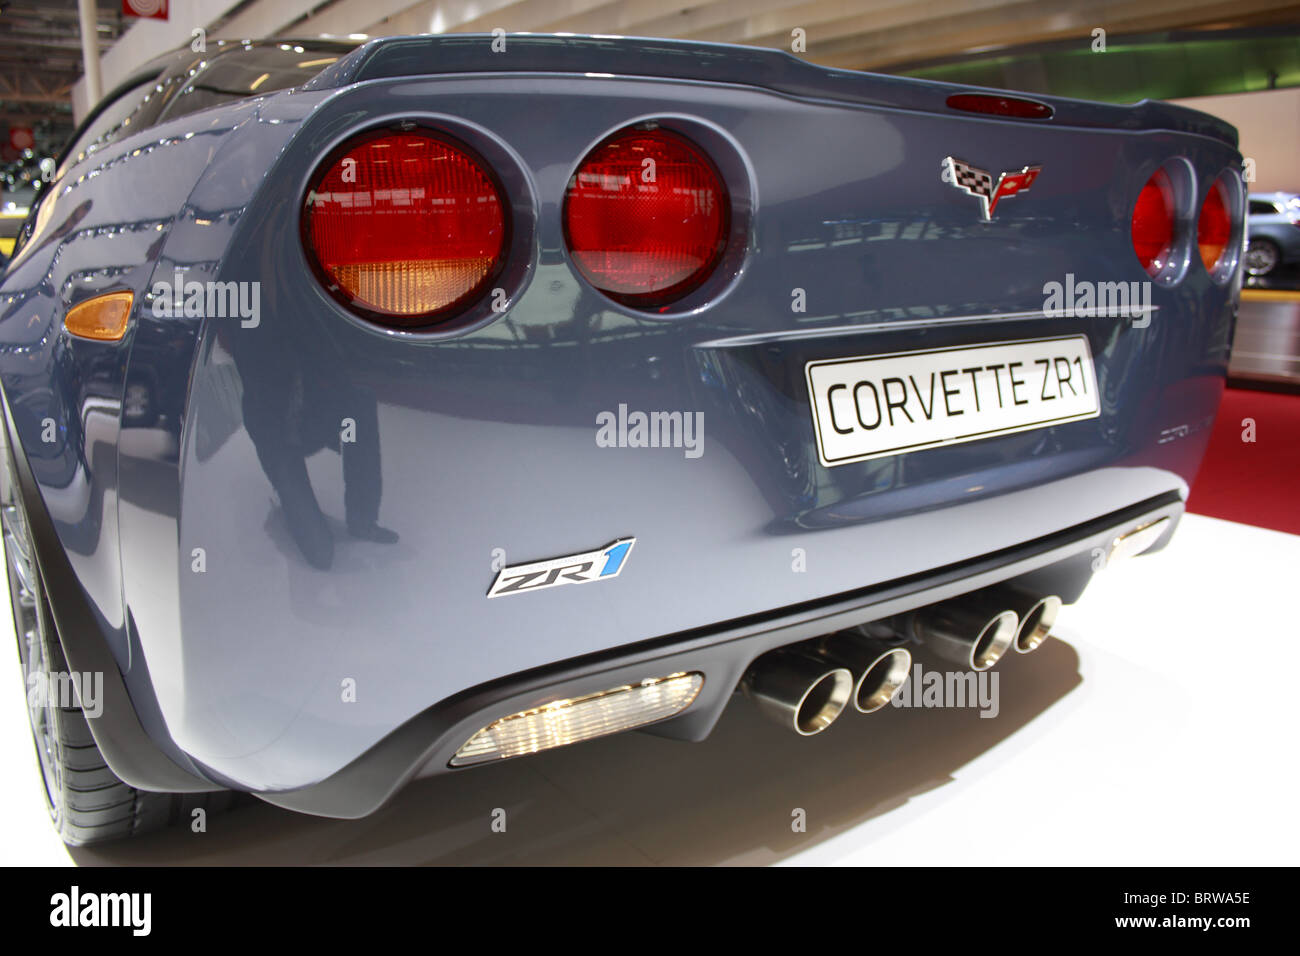 Corvette ZR1, Motor show, Mondial de l'automobile, Paris Stock Photo